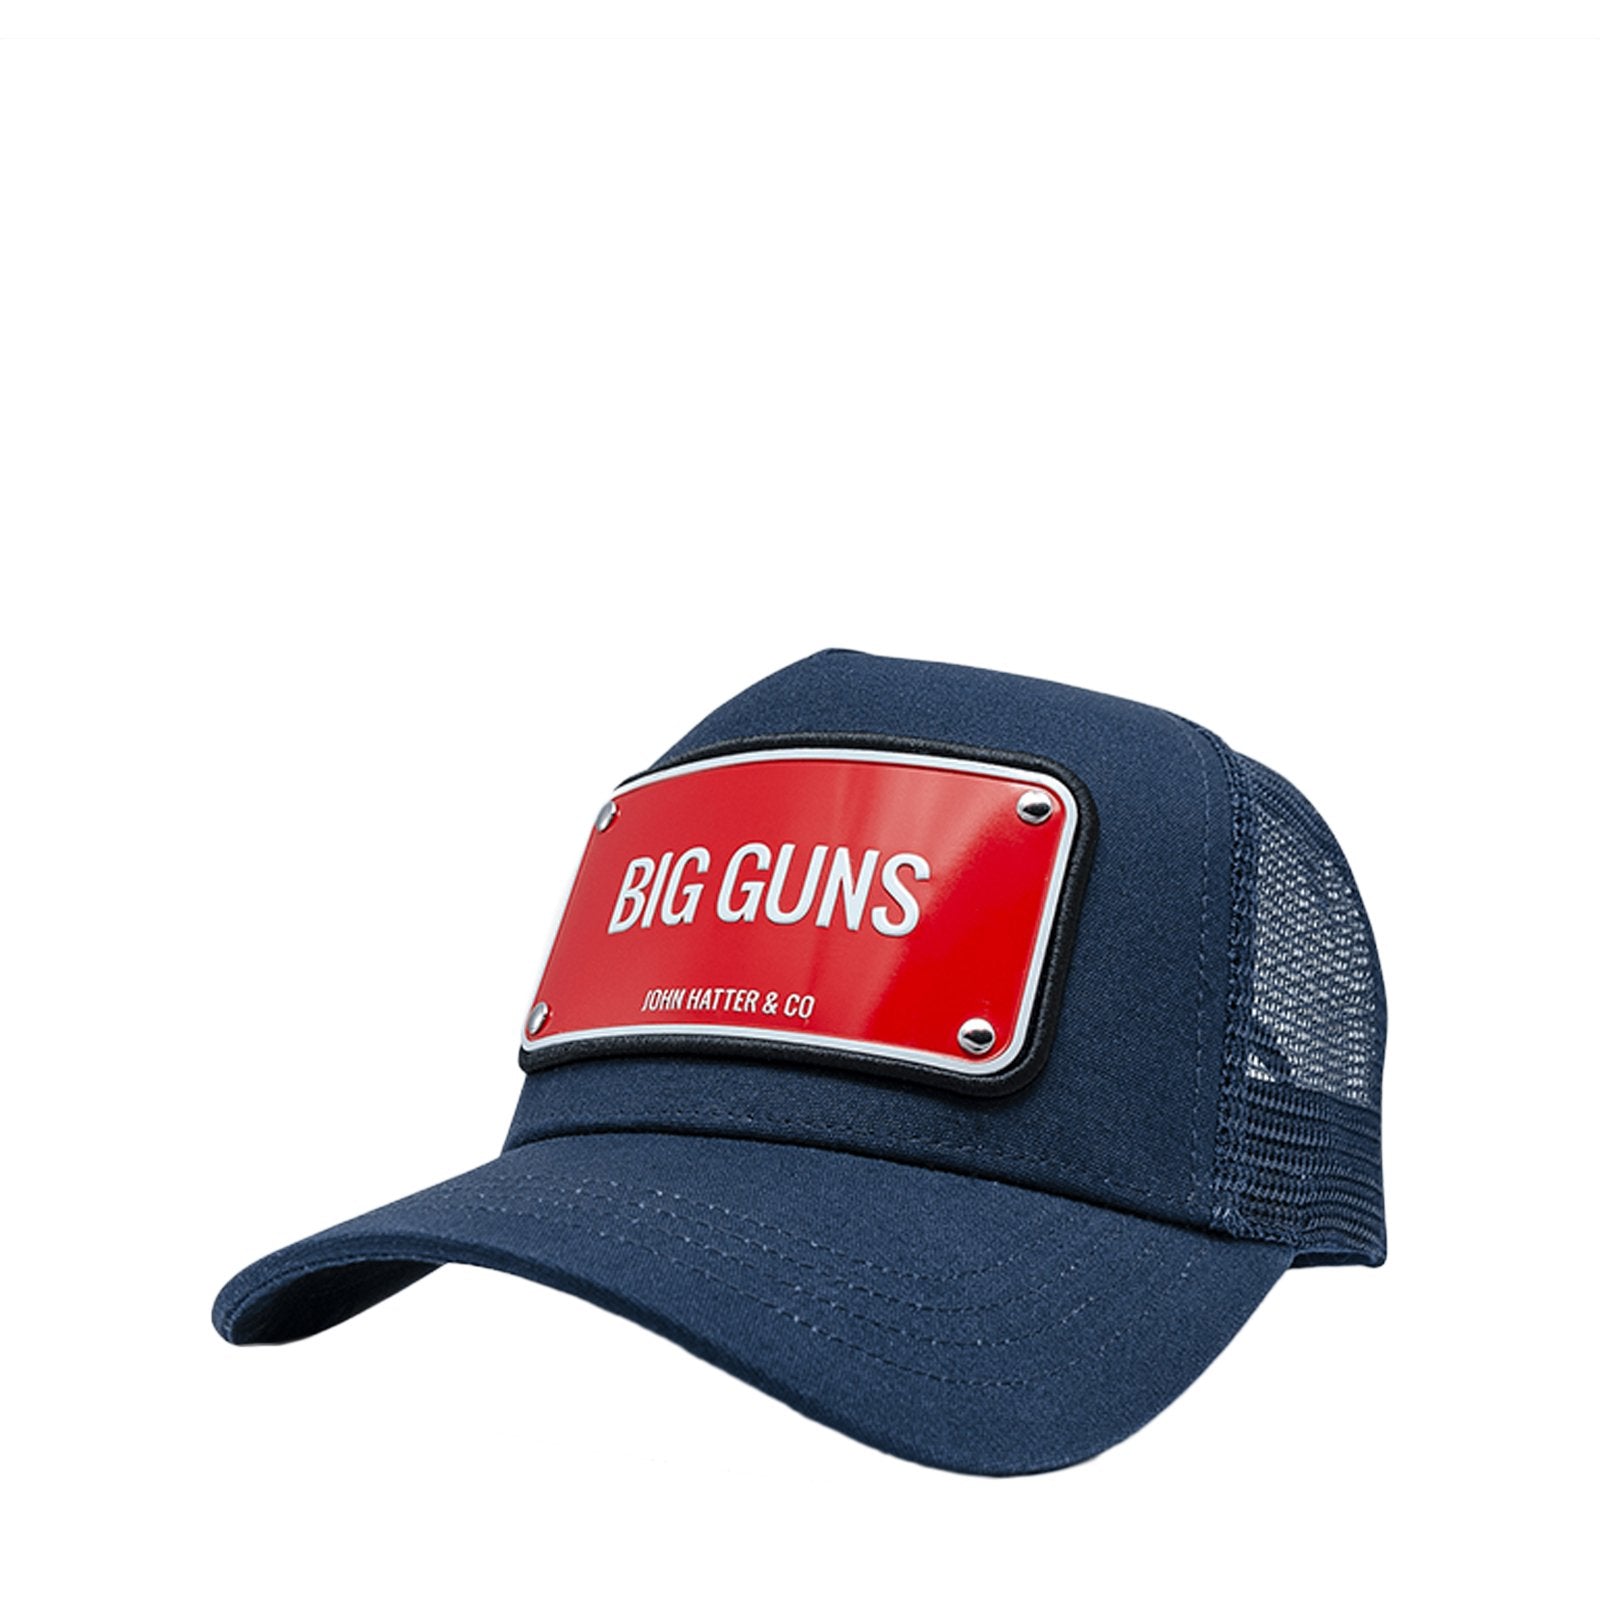 Big Guns Hats